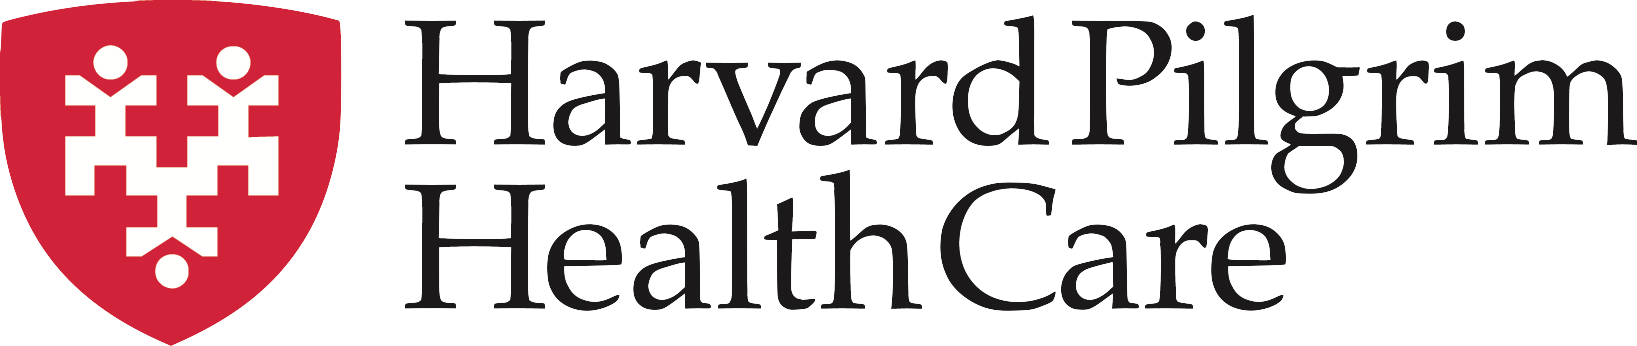 harvard-pilgrim-health-care-logo.png